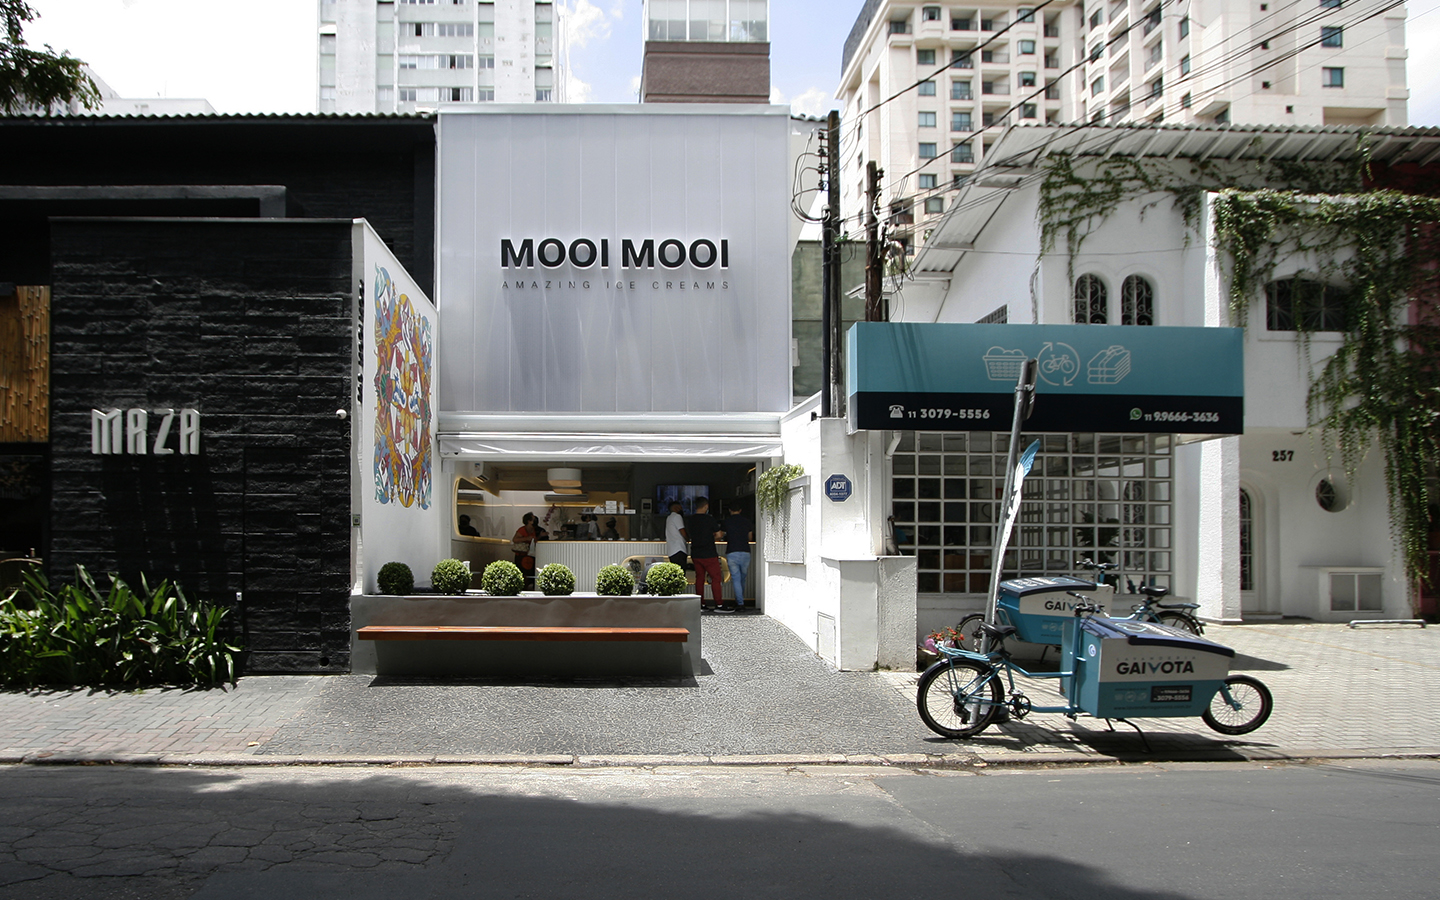 Conheça a Mooi Mooi, uma sorveteria em São Paulo inovadora